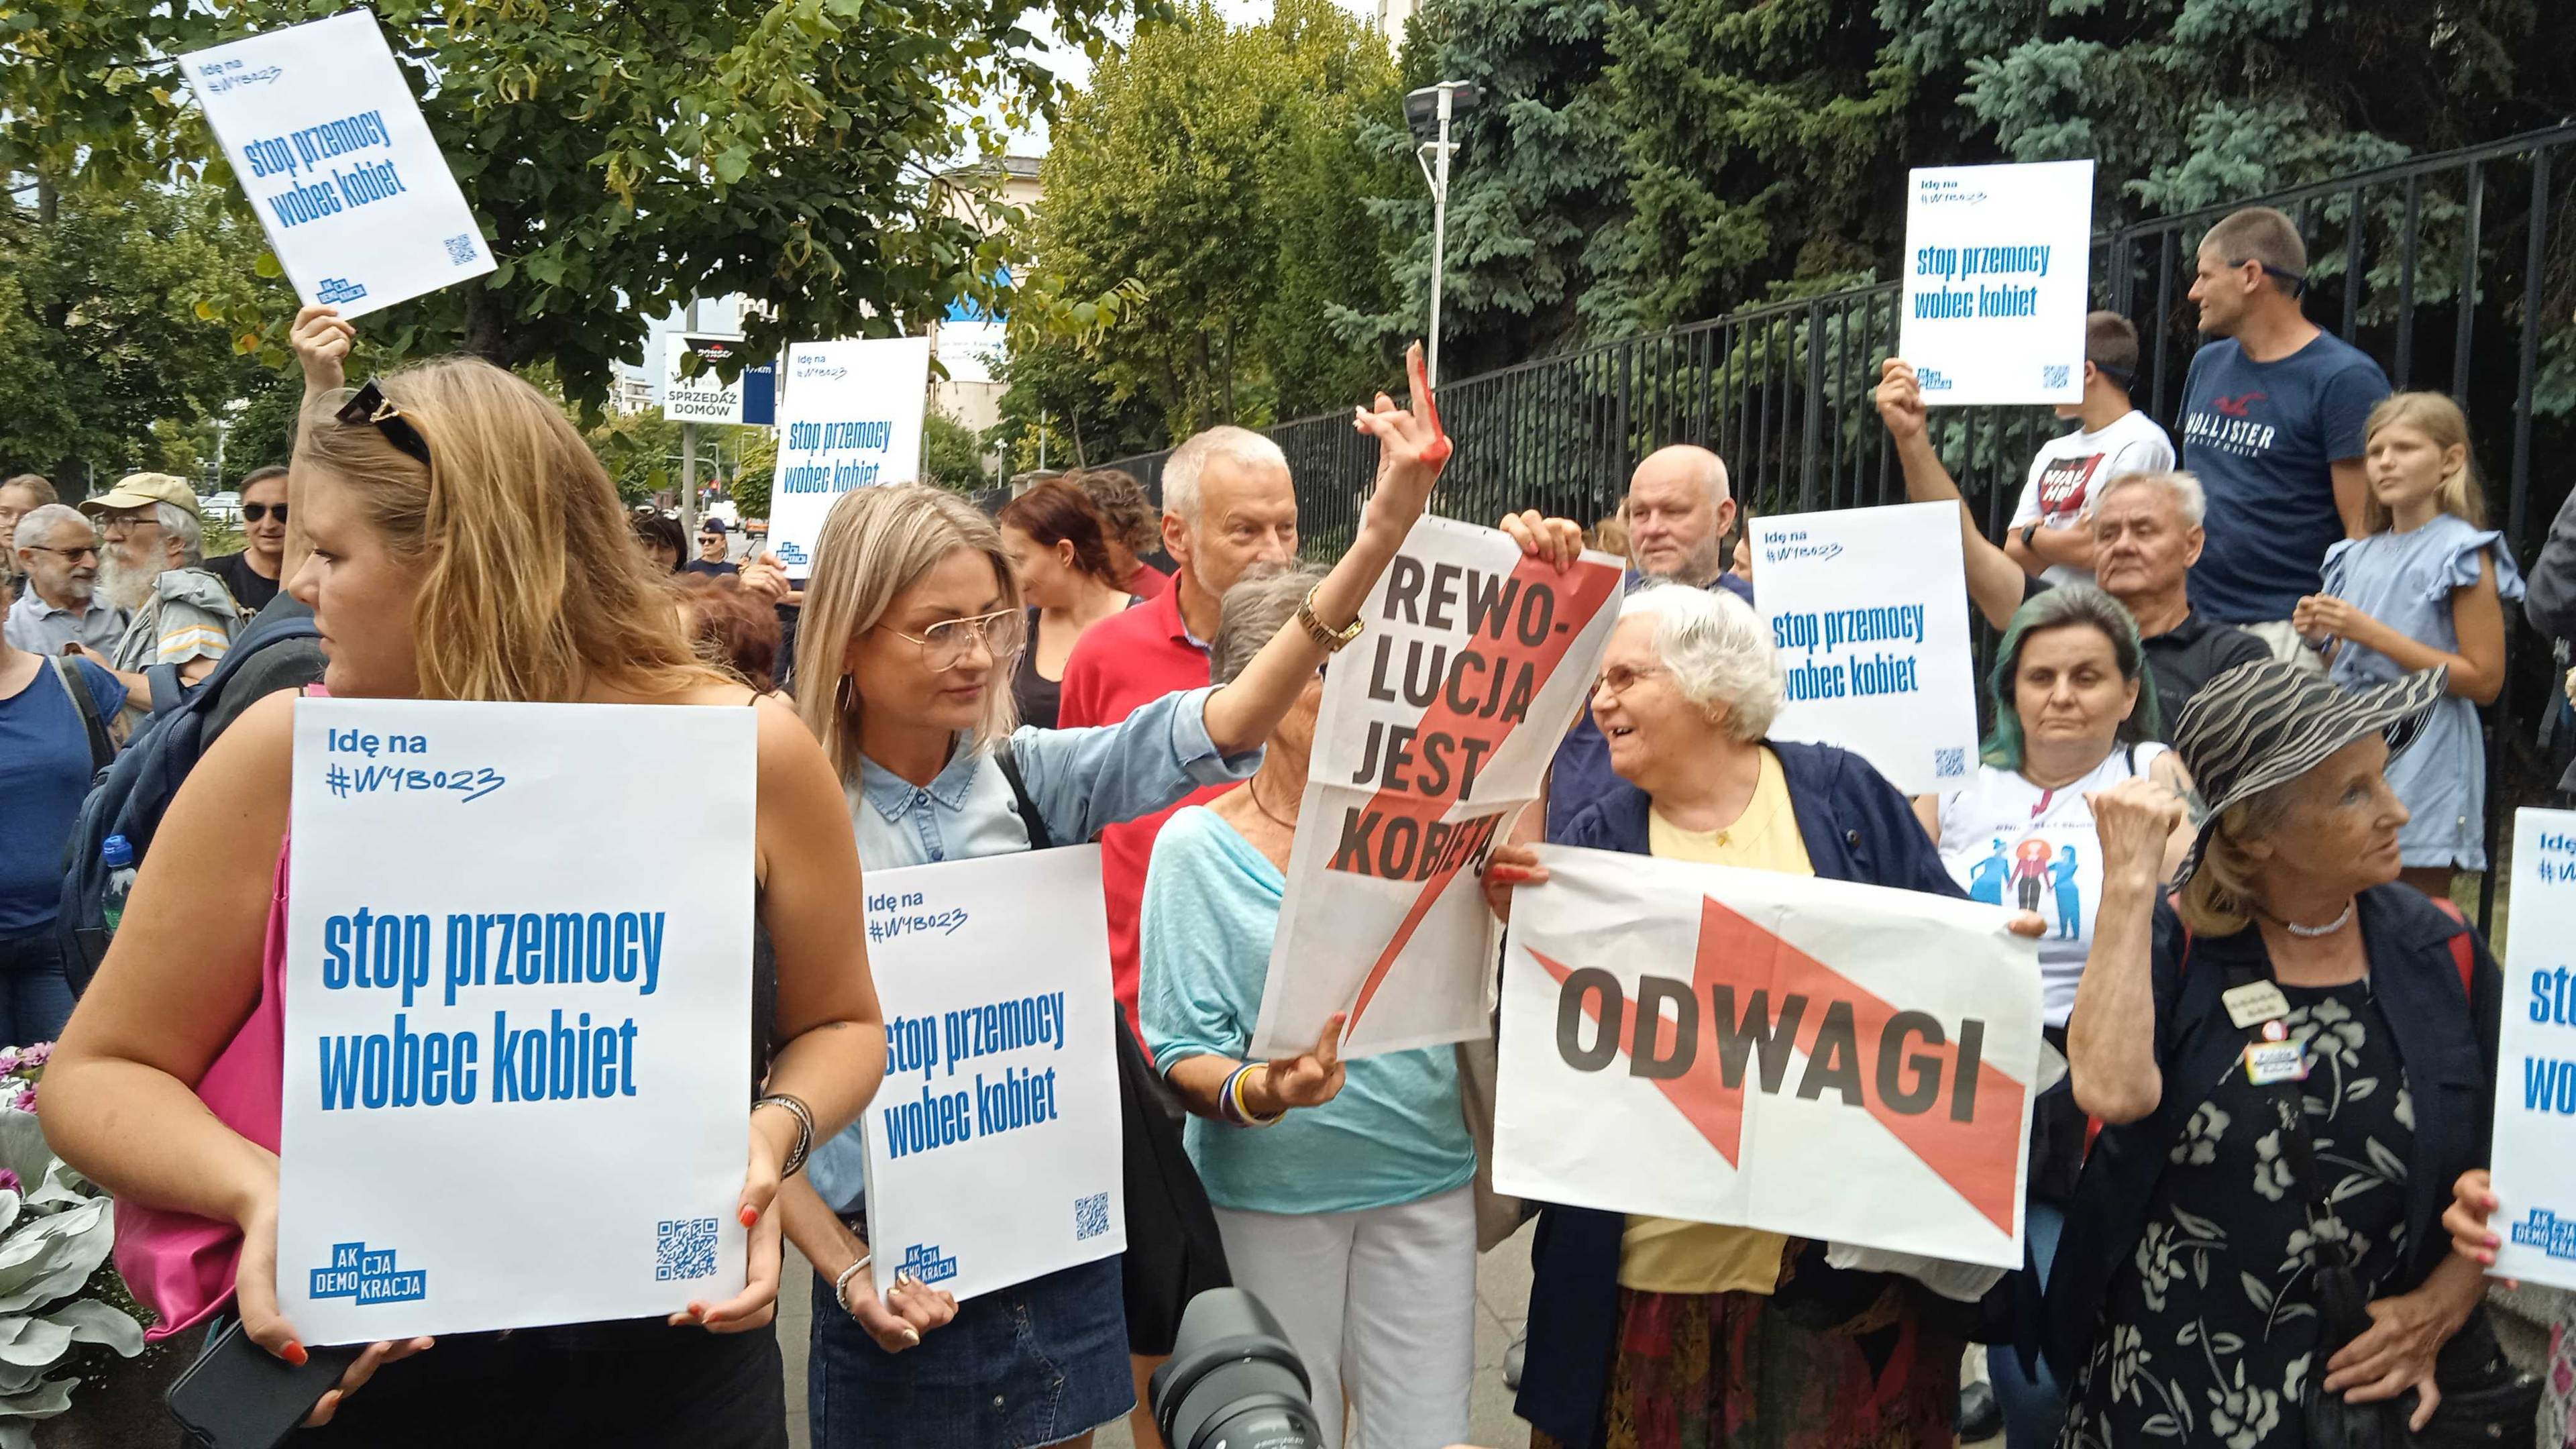 Demonstracja solidarnościowa z panią Joanną w Warszawie. Na zdjęciu osoby z plakatami z napisem "Odwagi" oraz "Stop przemocy wobec kobiet"